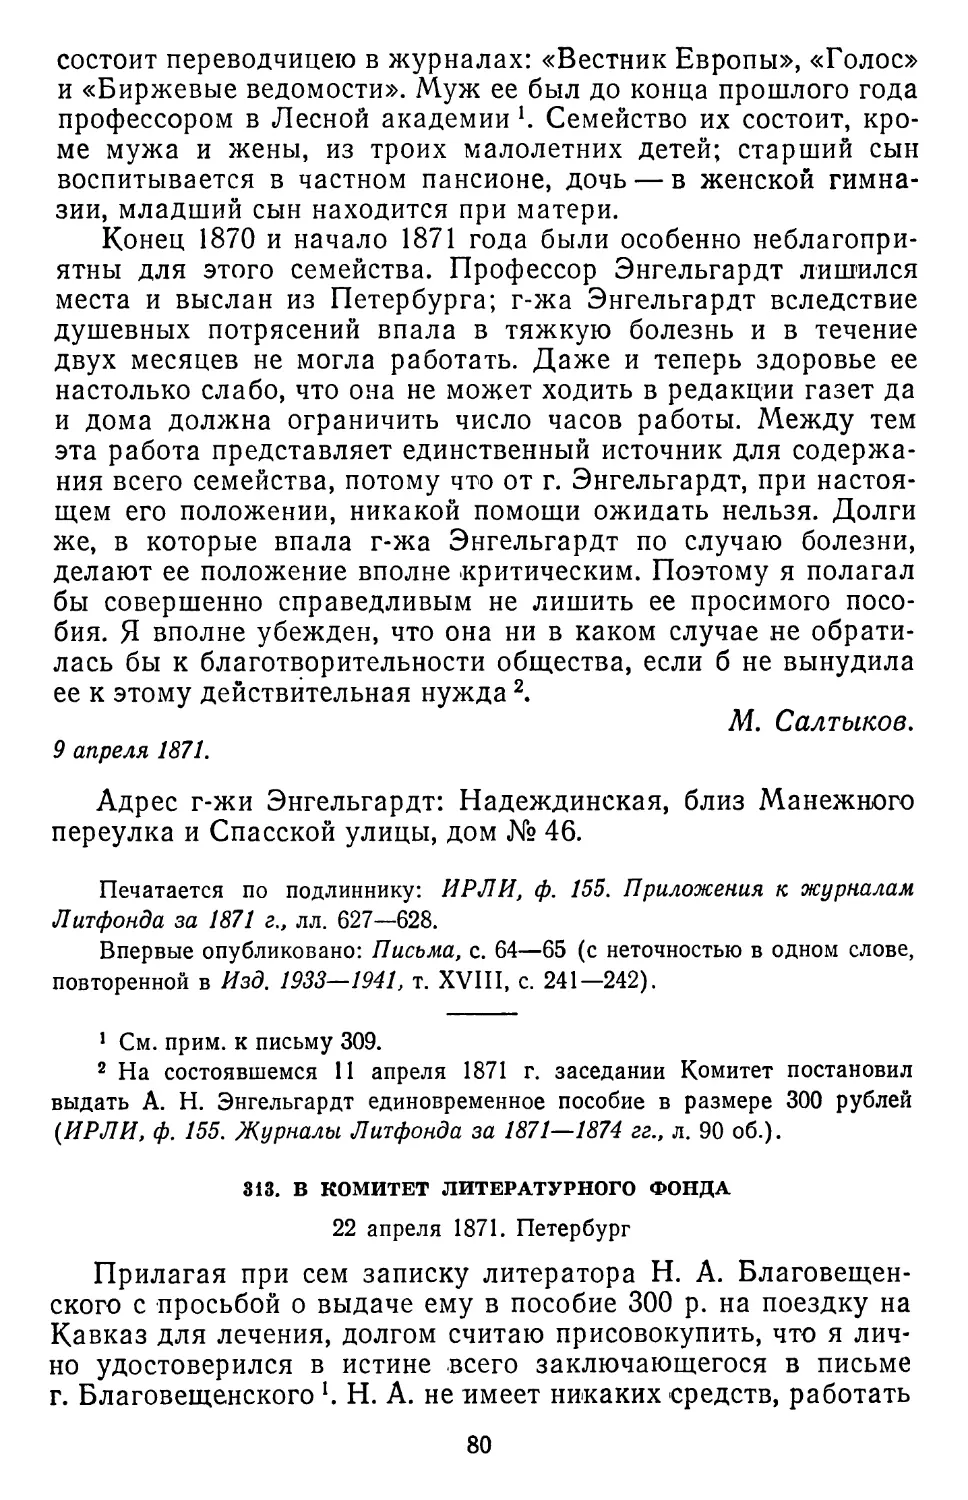 313.В Комитет Литературного фонда. 22 апреля 1871. Петербург